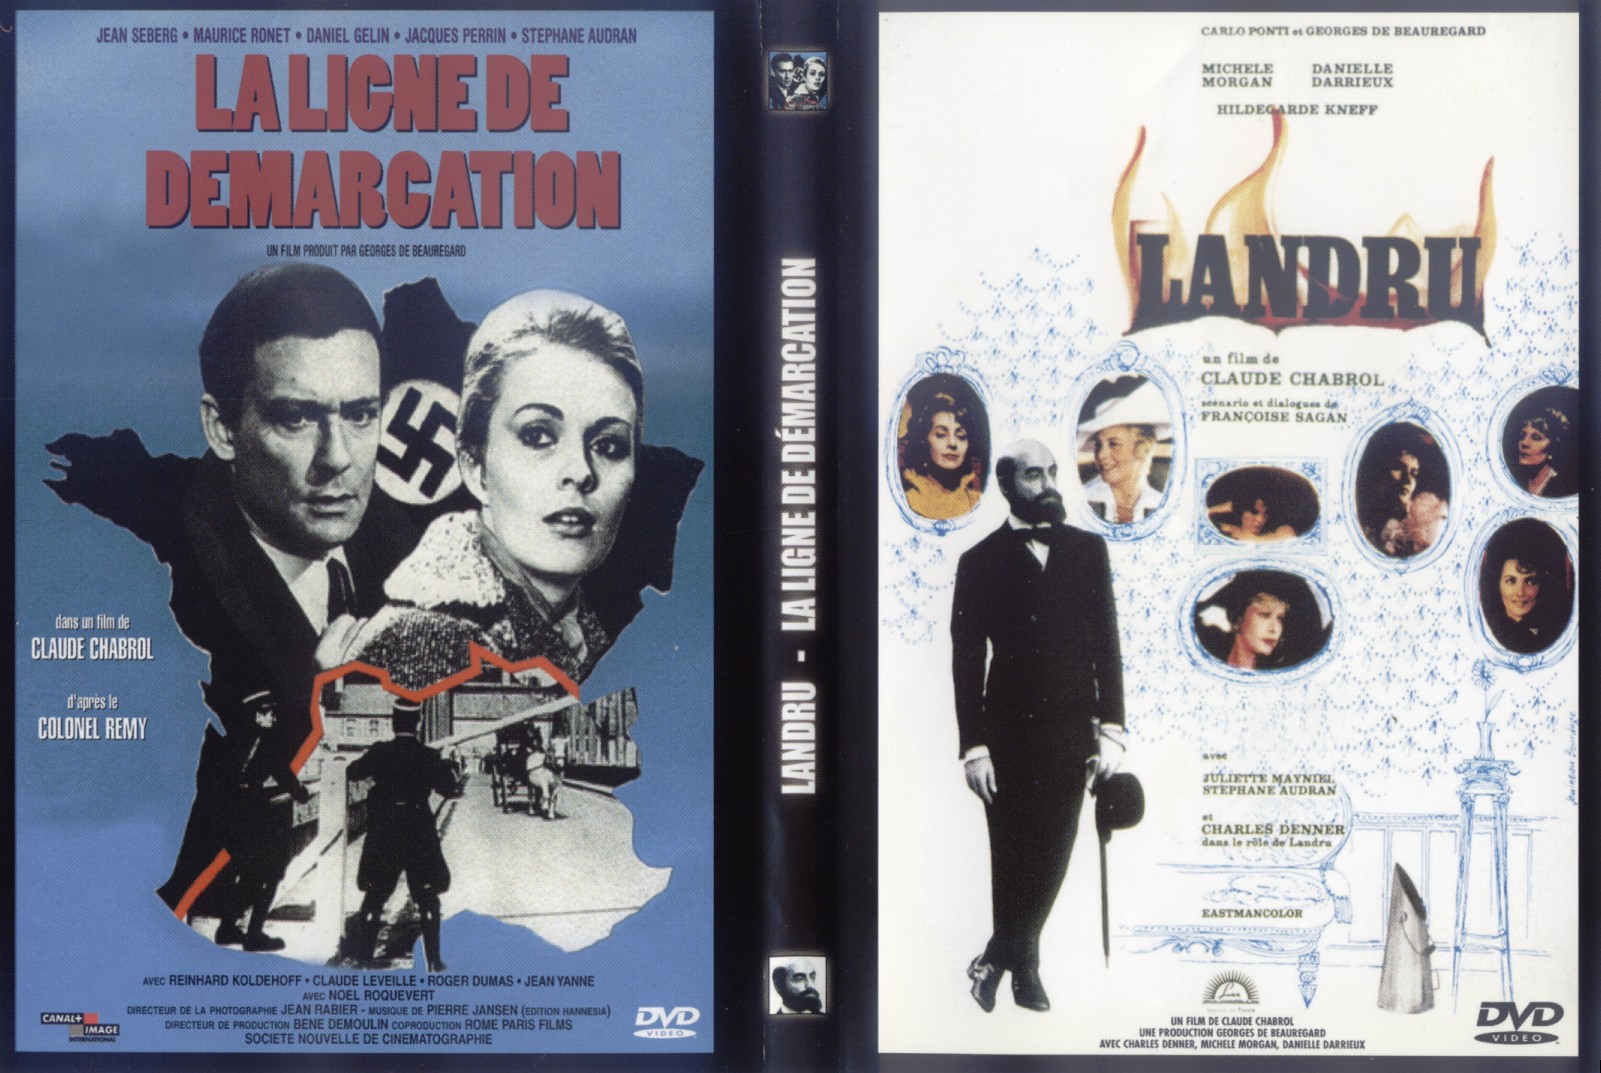 Jaquette DVD Landru - La ligne de dmarcation